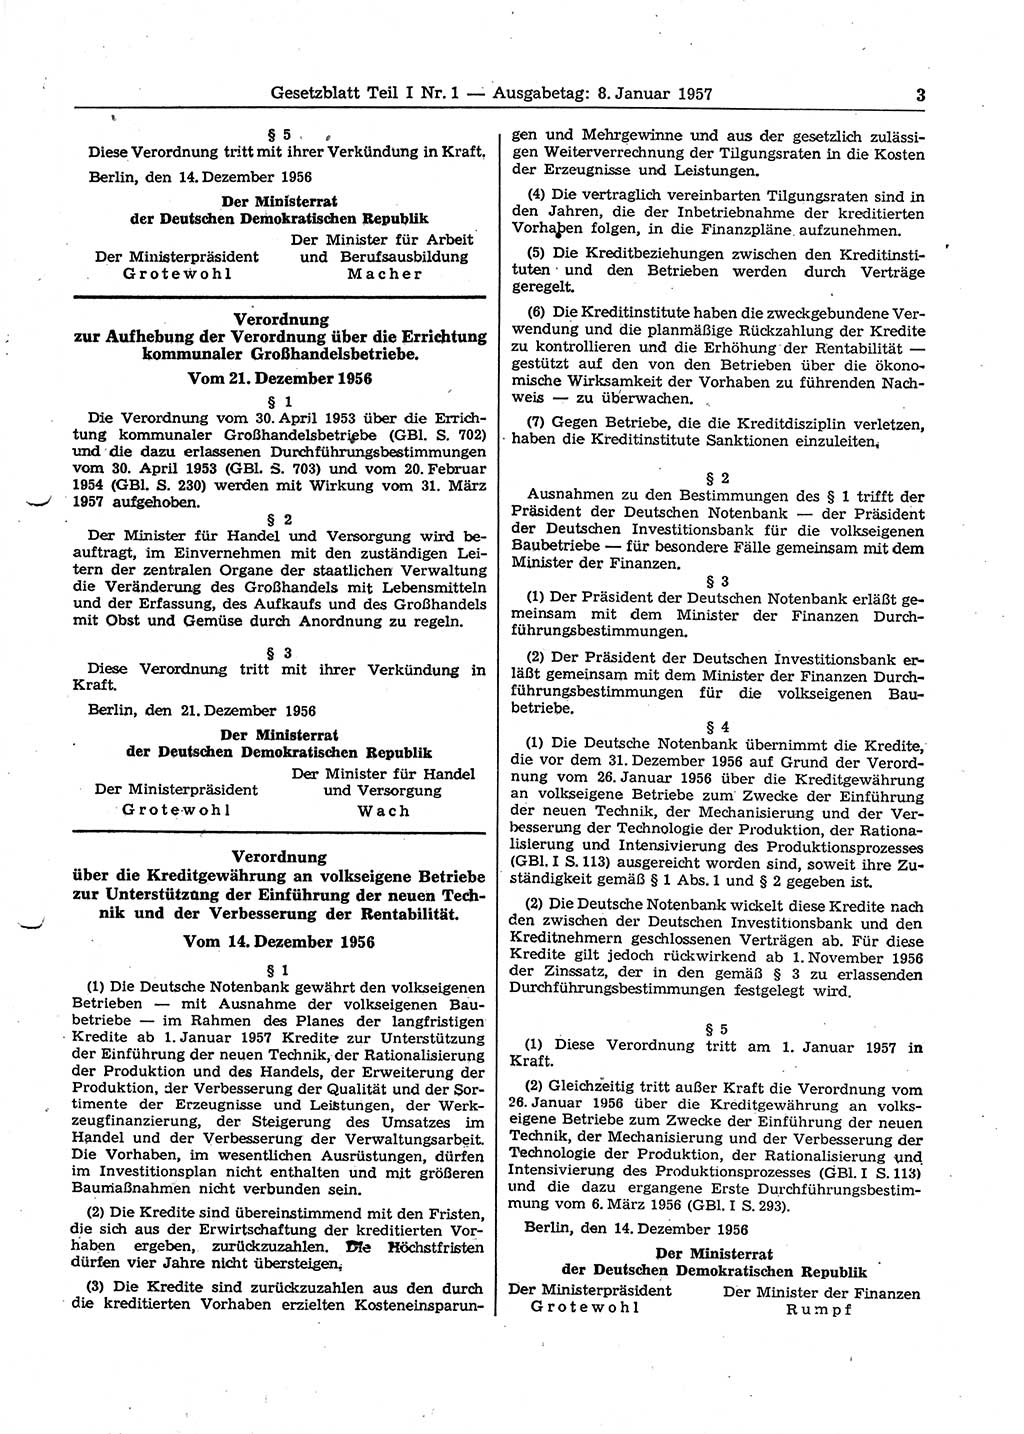 Gesetzblatt (GBl.) der Deutschen Demokratischen Republik (DDR) Teil Ⅰ 1957, Seite 3 (GBl. DDR Ⅰ 1957, S. 3)